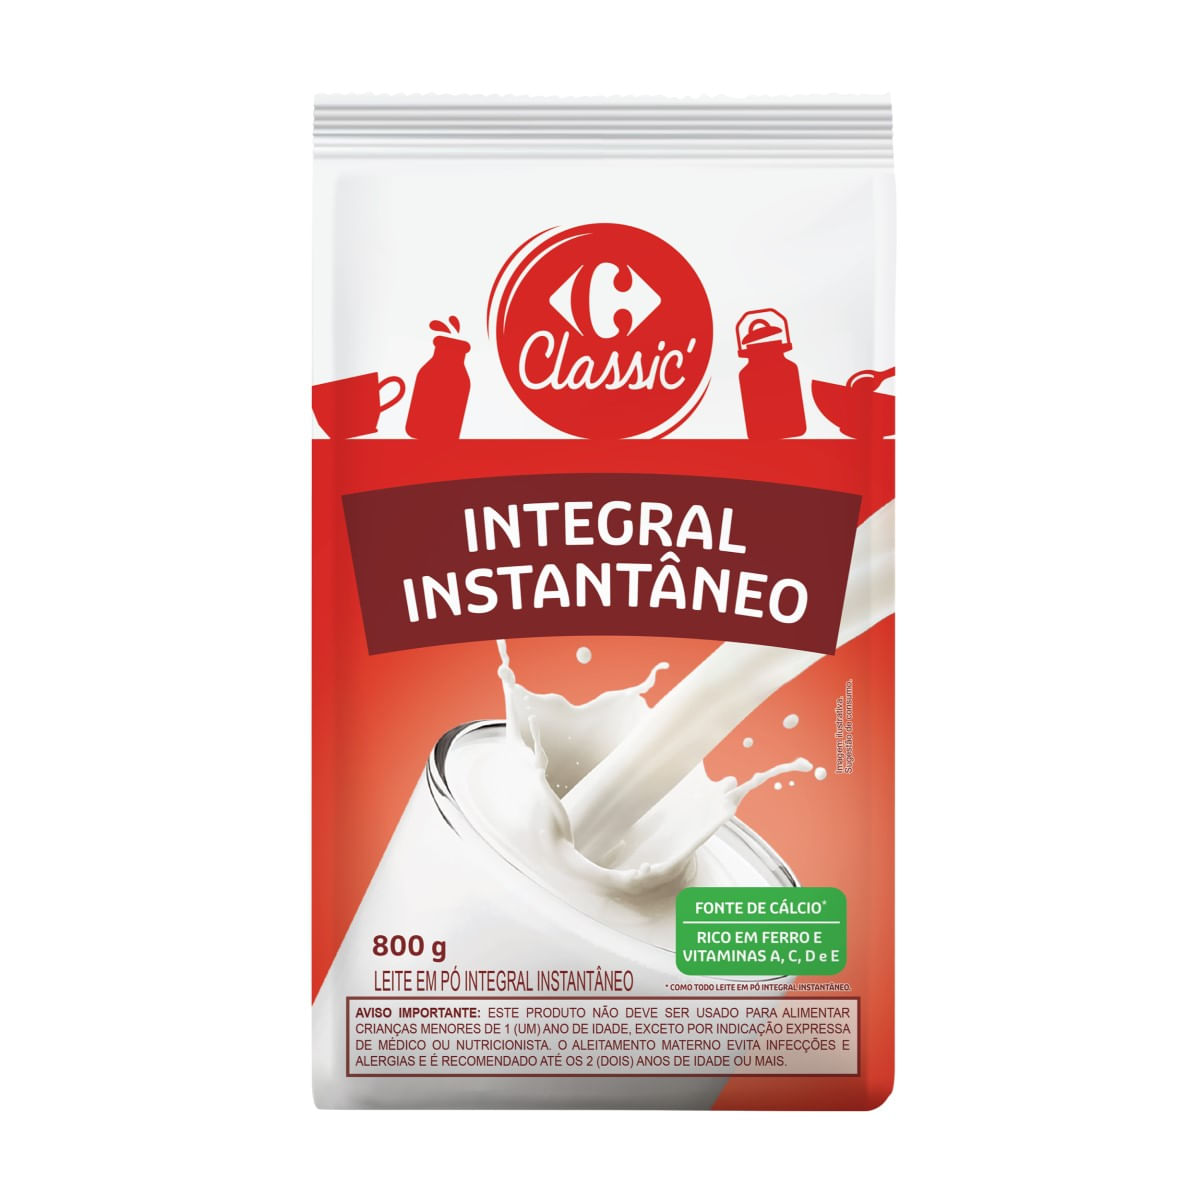 leite-em-po-integral-instantaneo-carrefour-classic-800-g-1.jpg